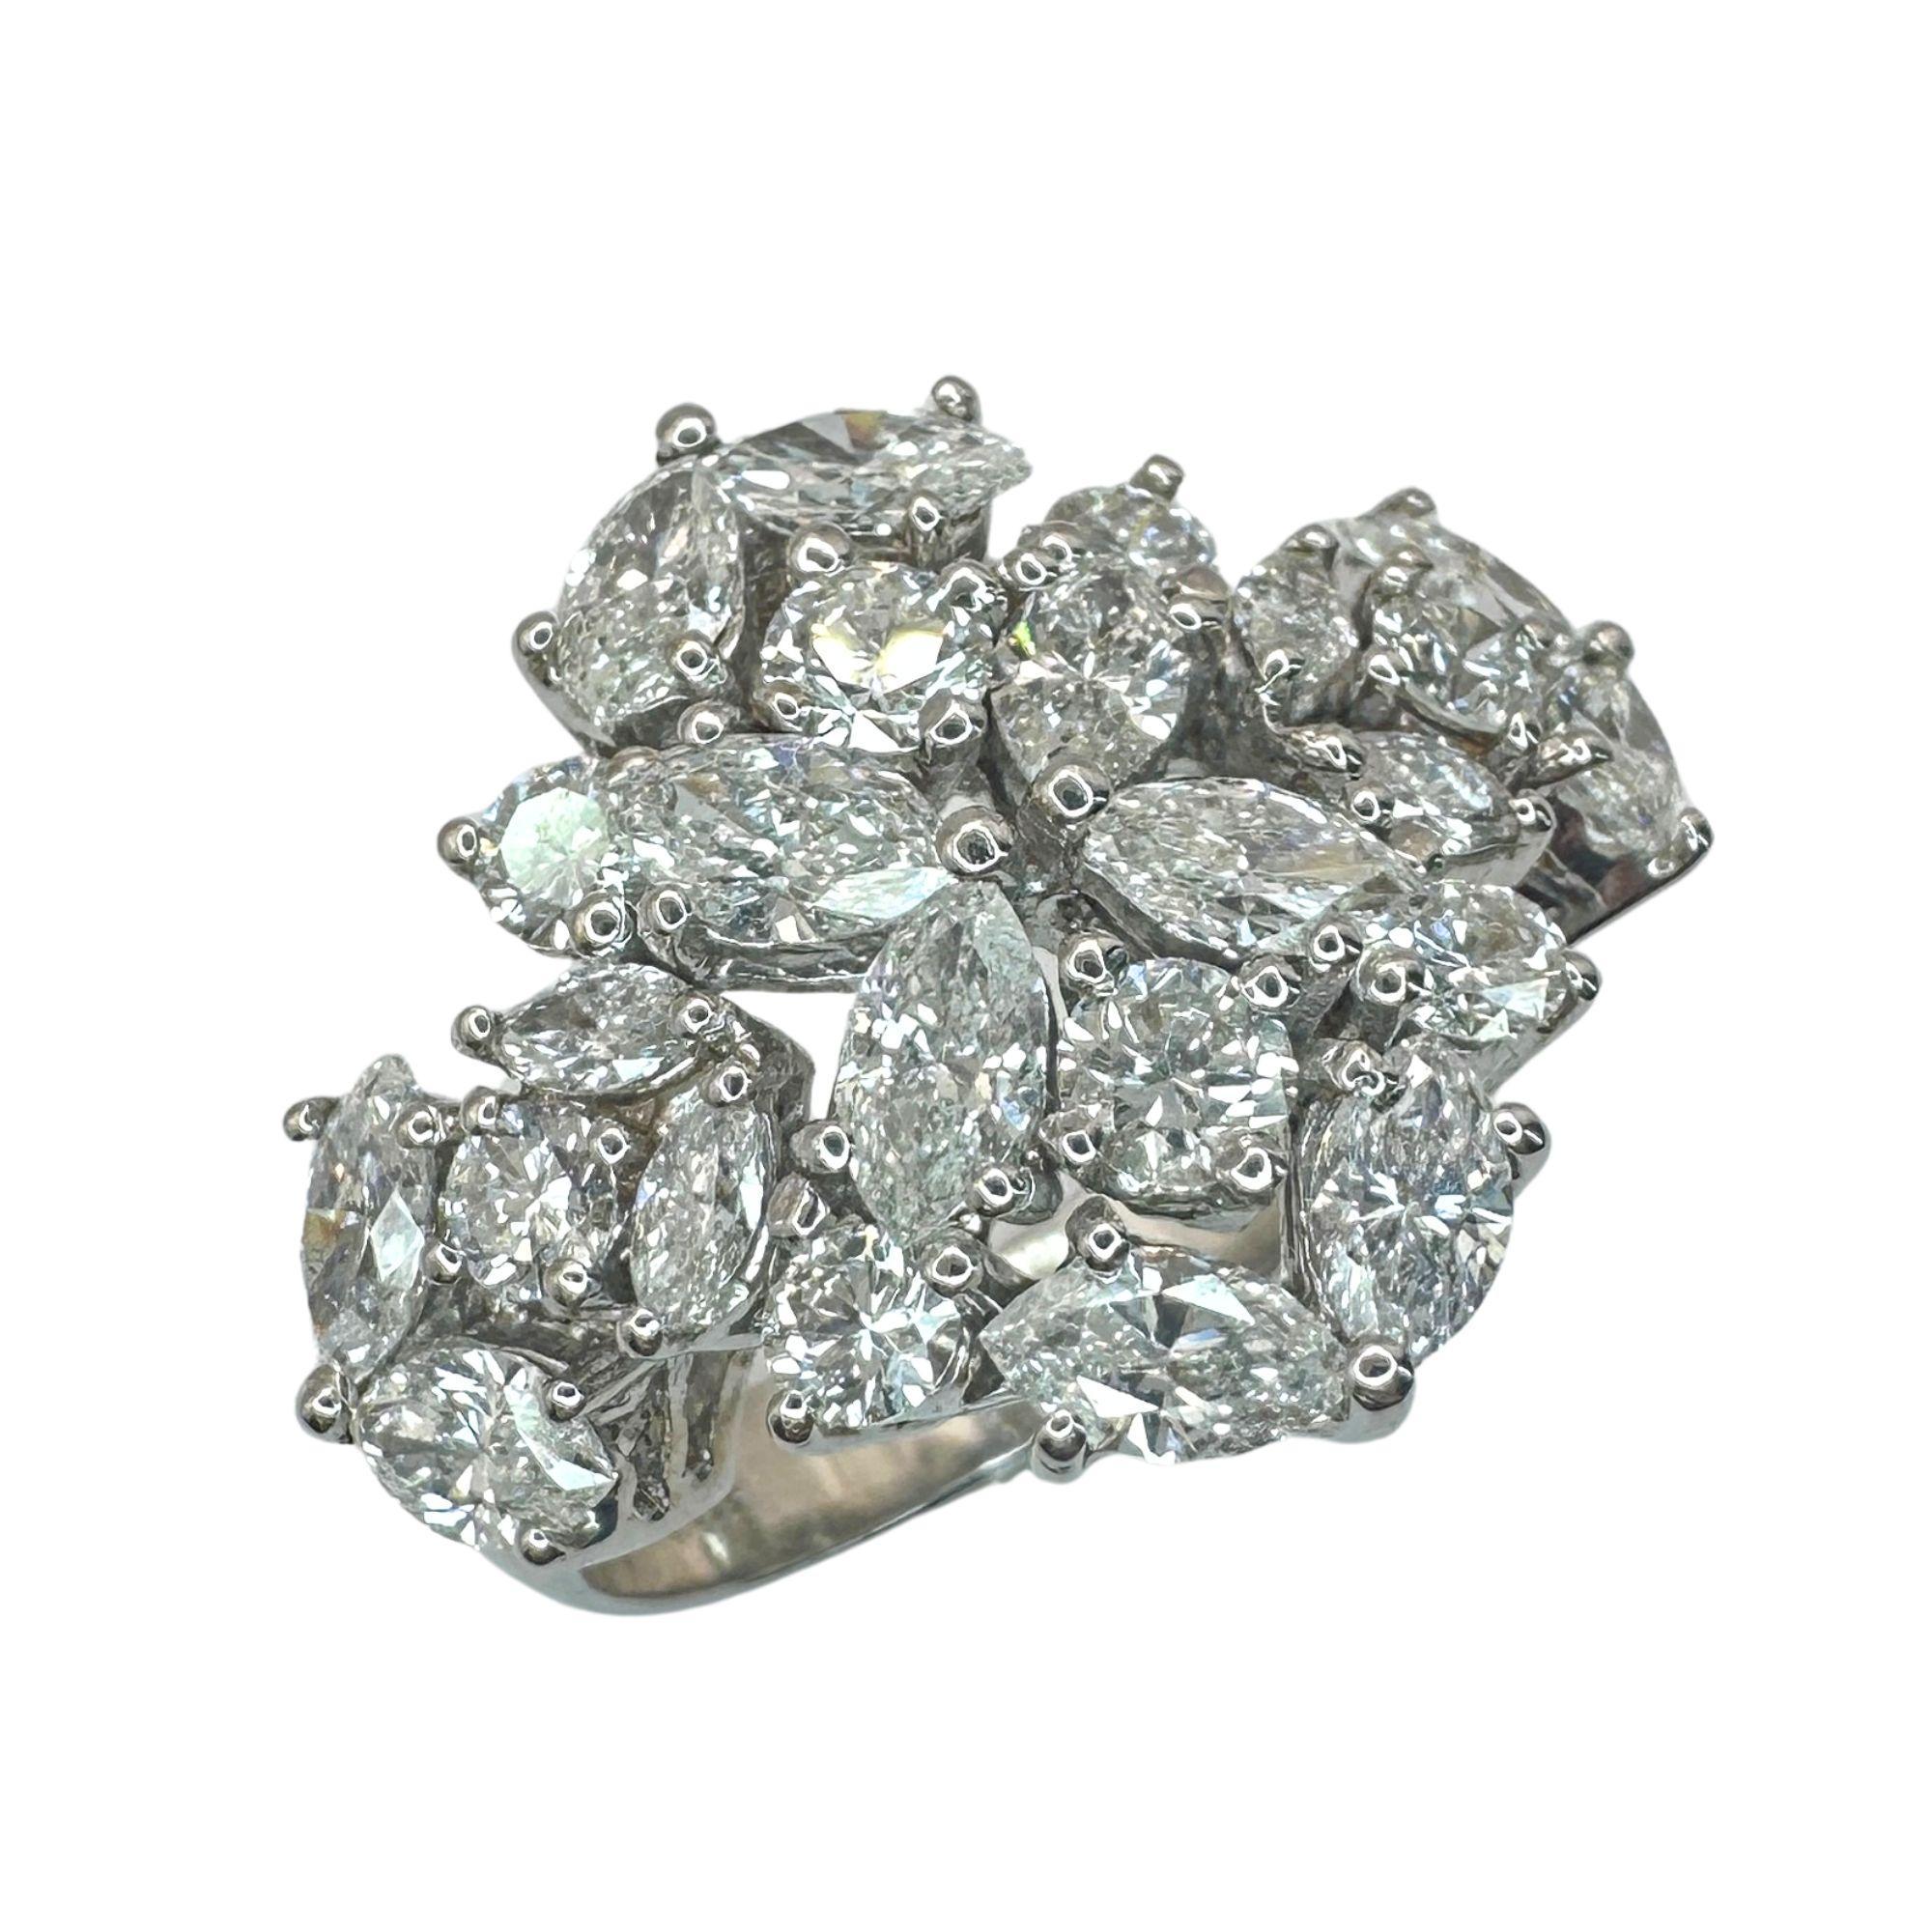 Dieser 18k White Gold Marquise Cut Diamond Ring ist ein zeitloses Stück in gutem Zustand. Mit 1,99 Karat Diamanten im Marquise-Schliff und 0,74 Karat Diamant-Akzenten ist er ein wahrer Blickfang. Mit einem Gewicht von 7,4 Gramm und der Markierung